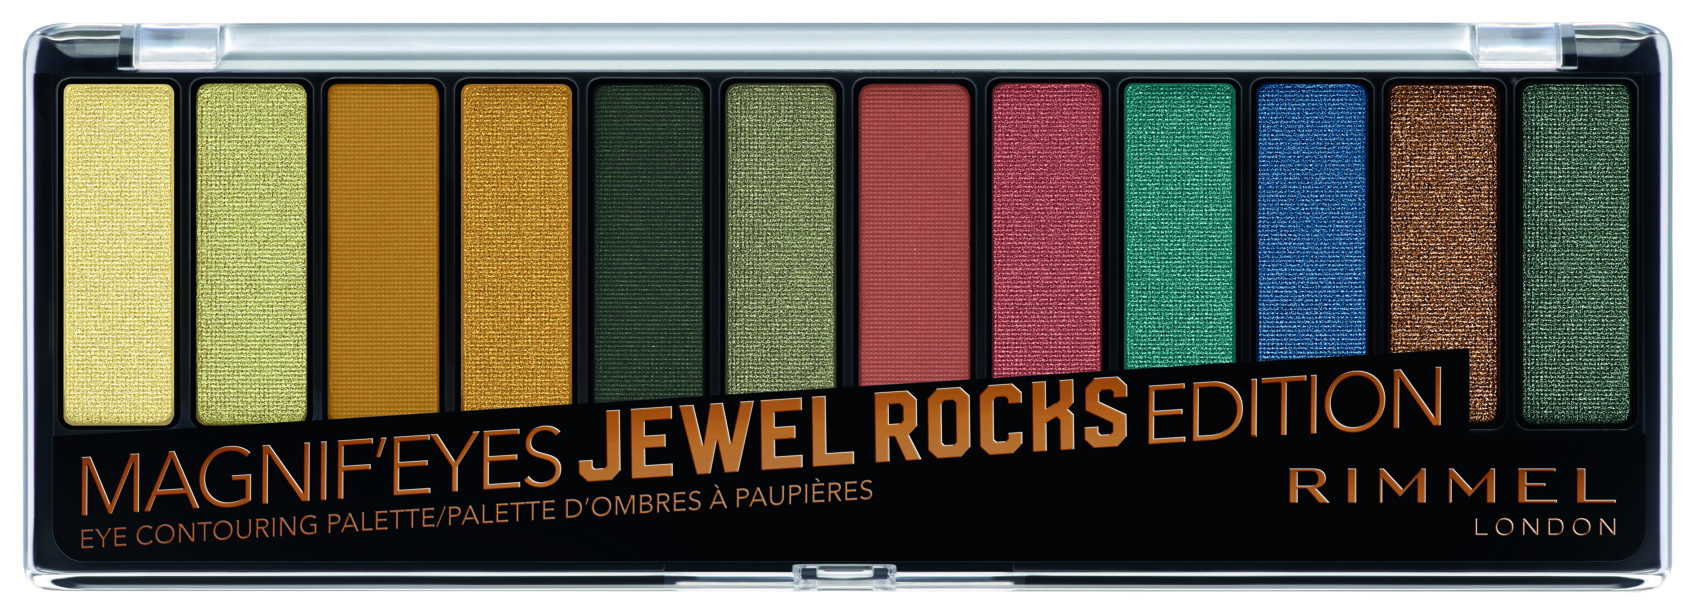 Тени для век Rimmel Magnif'eyes Jewel Rocks Edition Eye Contouring Palette 14,2 г свободное время экран magnif инструменты 5d усилитель фильма увеличенный экран телефона видео усилитель